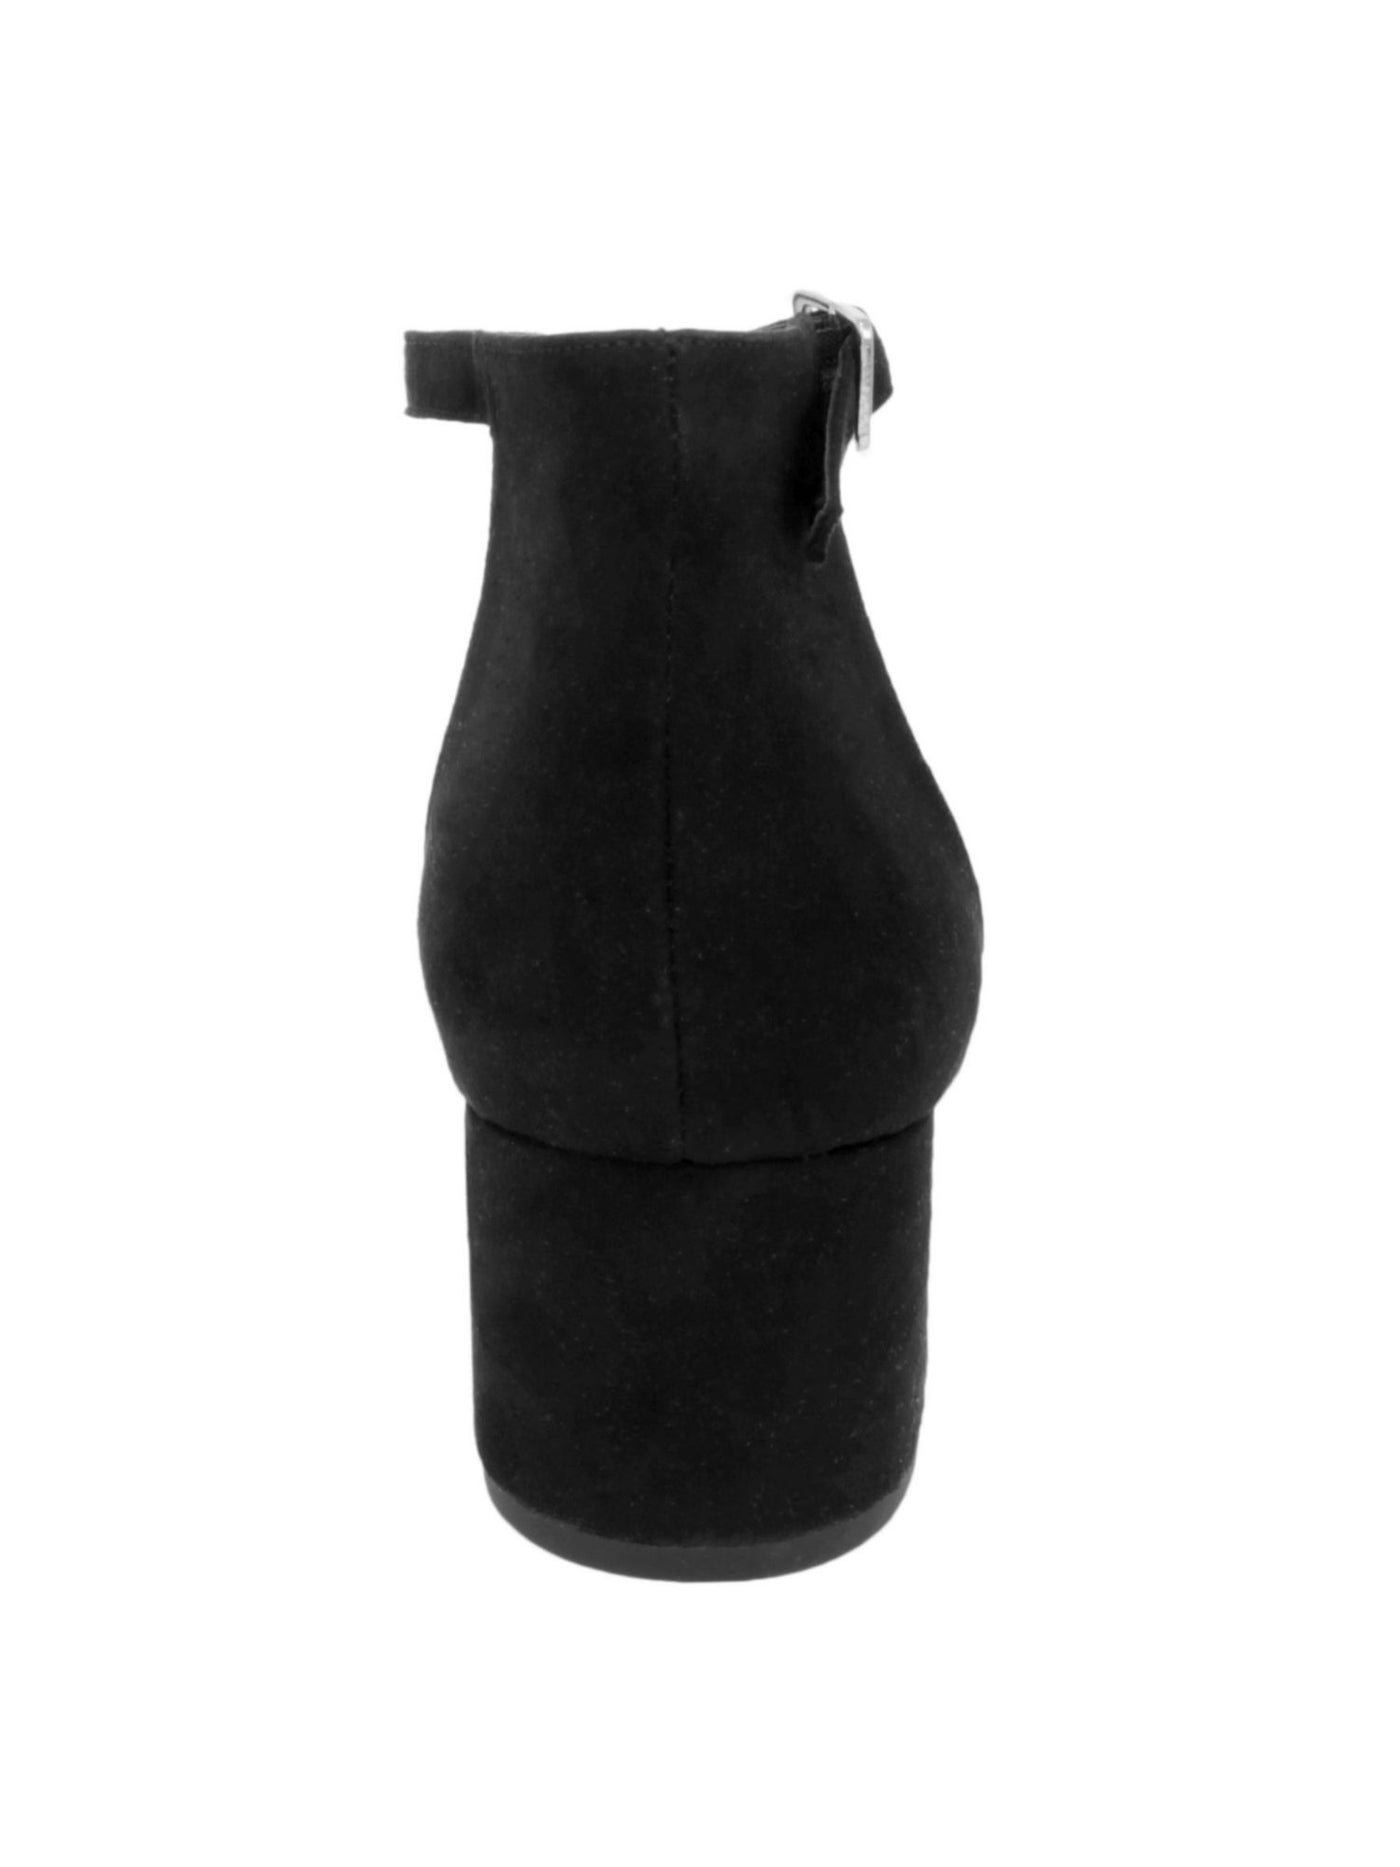 SUGAR Womens Black Adjustable Strap Noelle Low Block Heel Buckle Dress Sandals 7.5 M